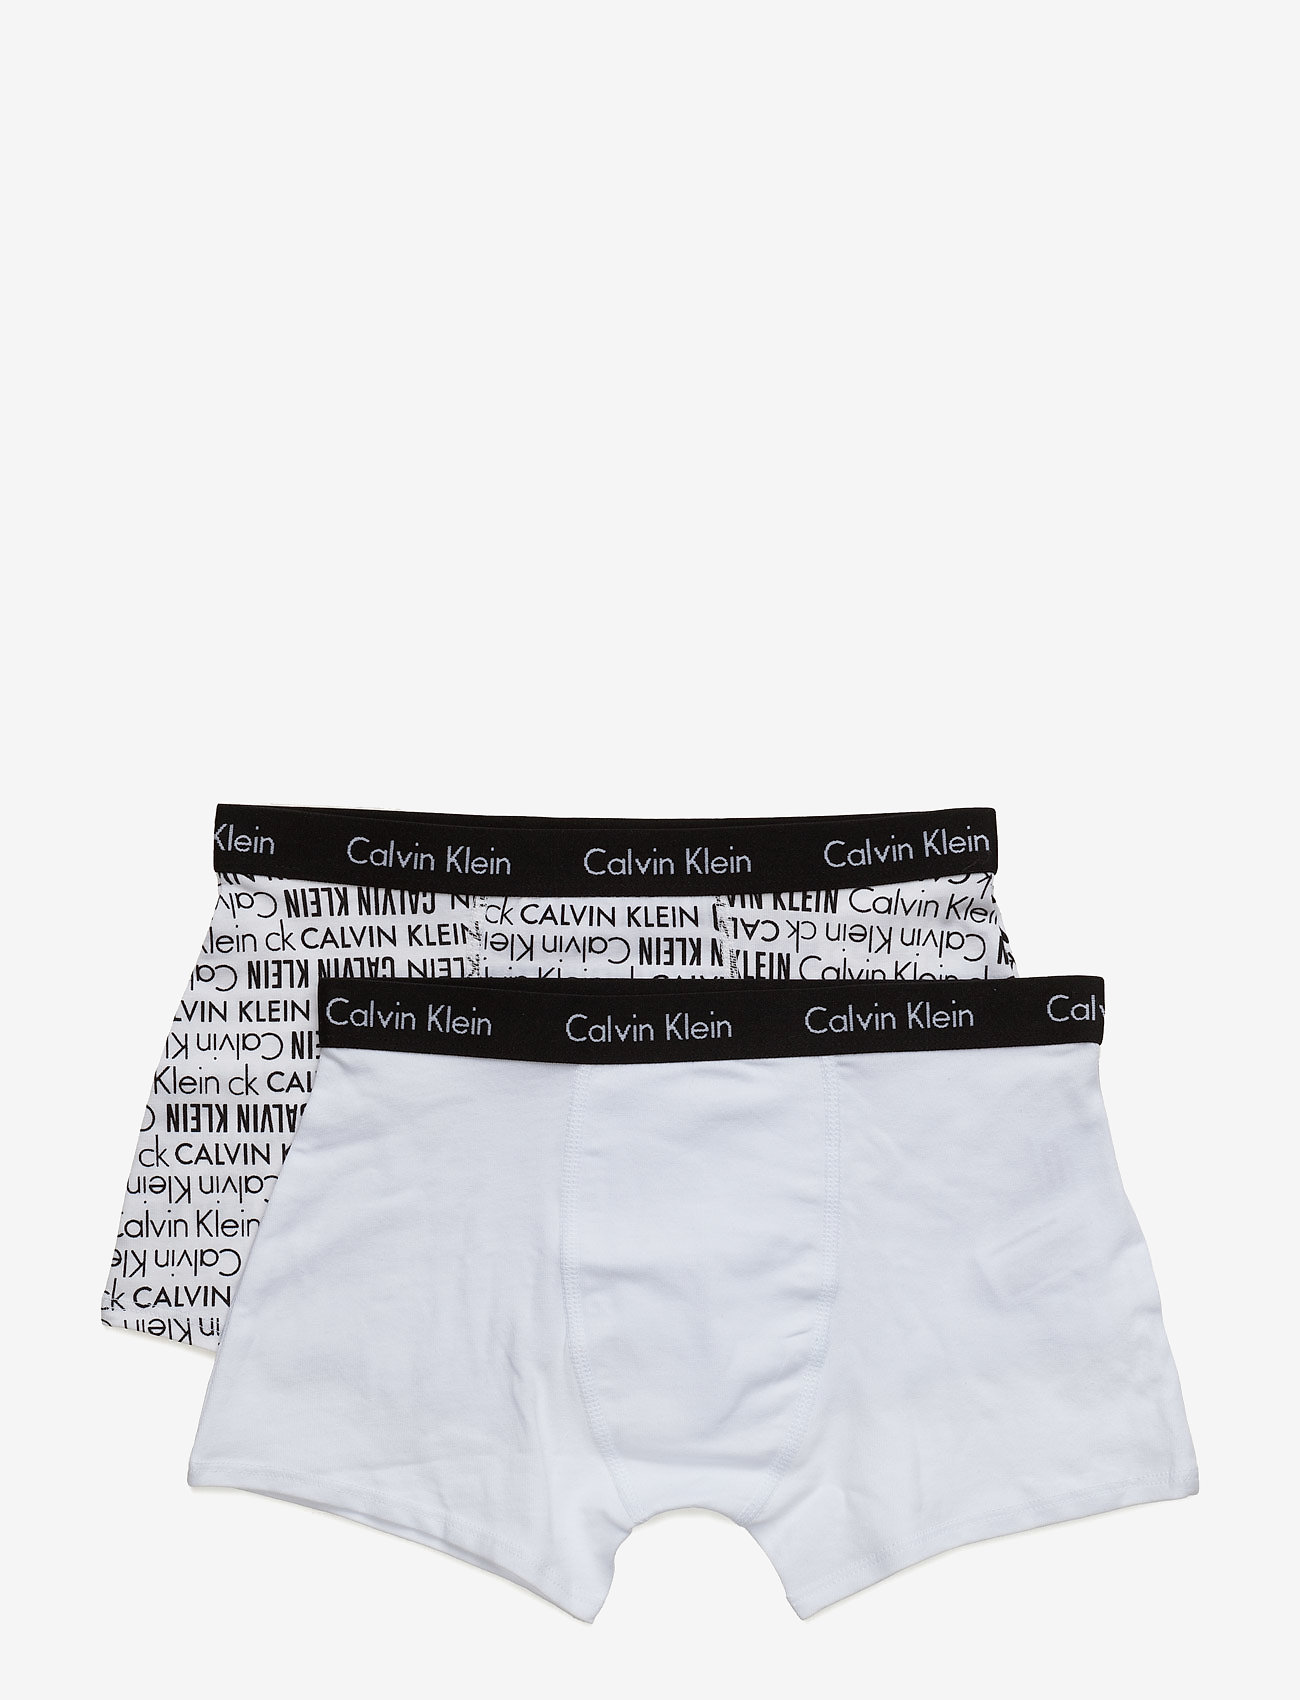 Calvin Klein 2pk Trunk - Underwear | Boozt.com